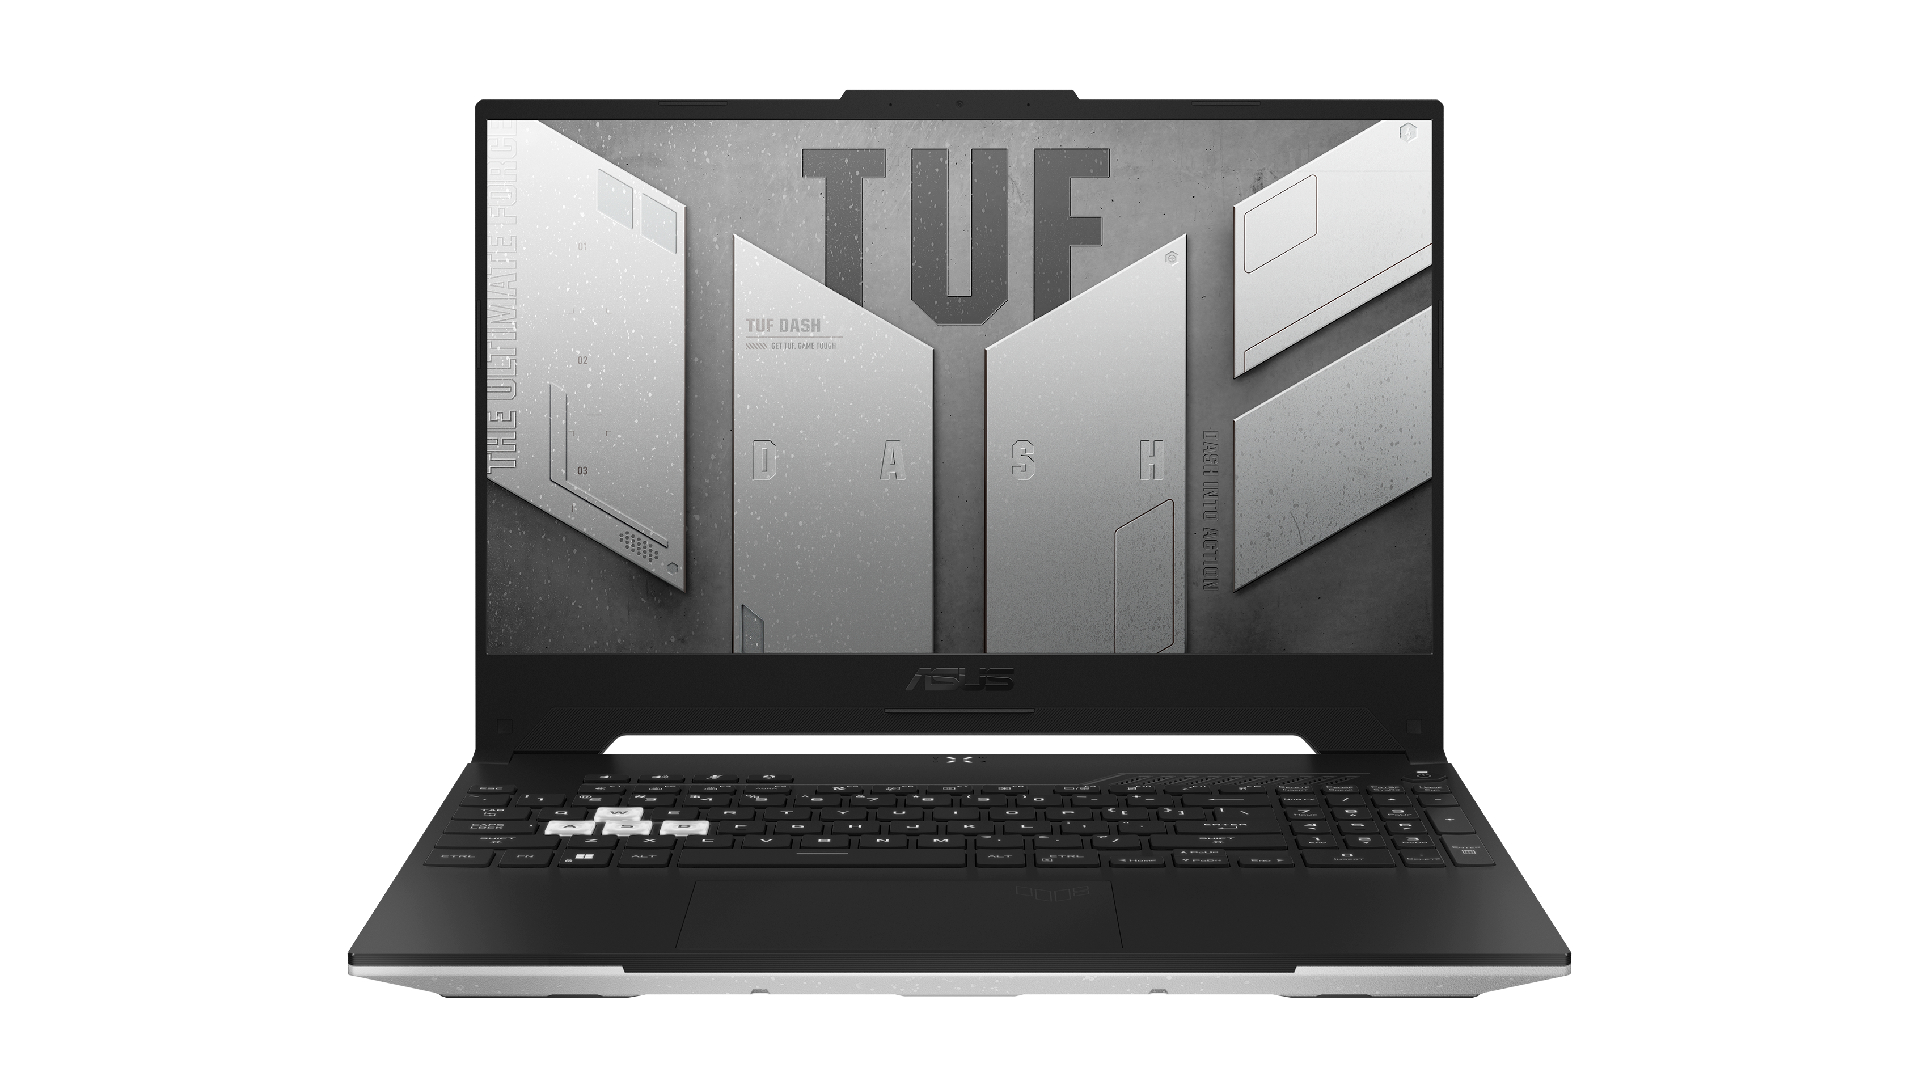 Asus TUF Dash 15 gaming laptop with white backdrop